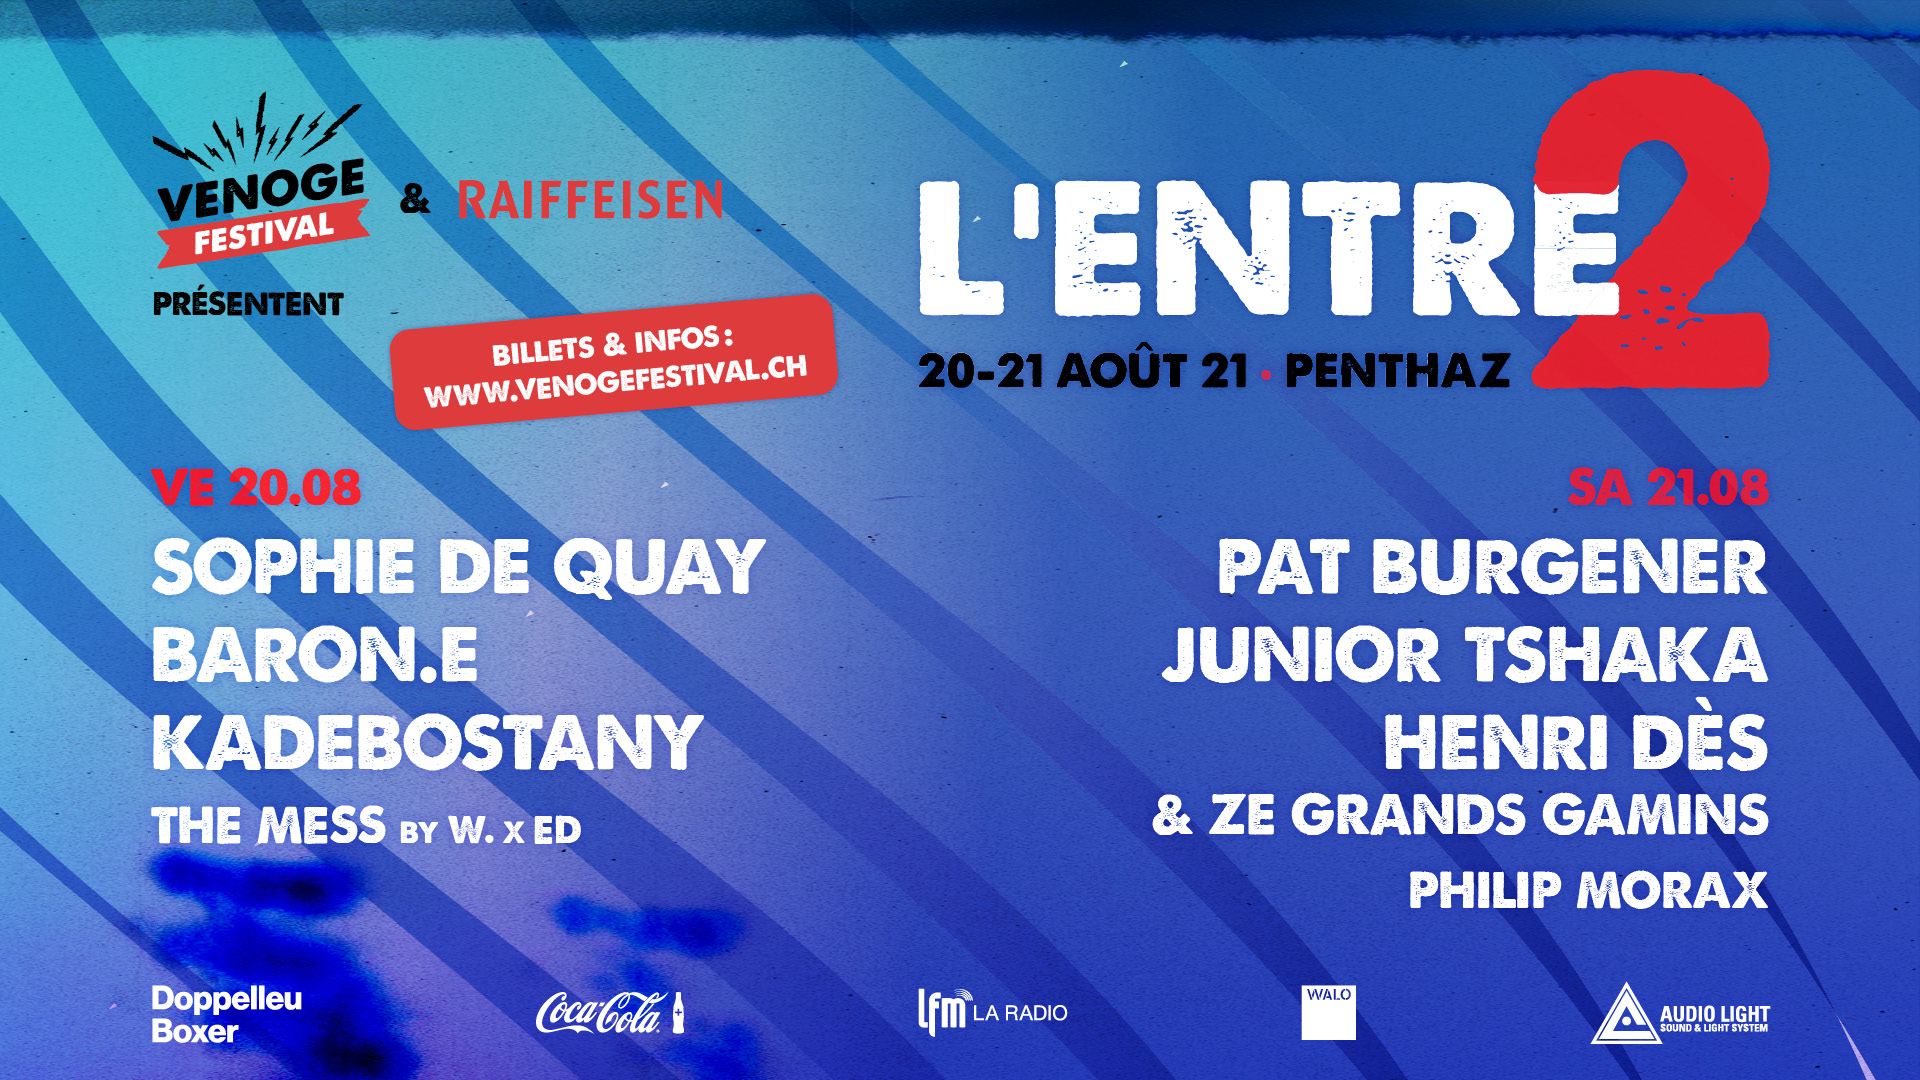 L'ENTRE 2 du Venoge Festival - Mr W. | DJ | Gilles Wenger